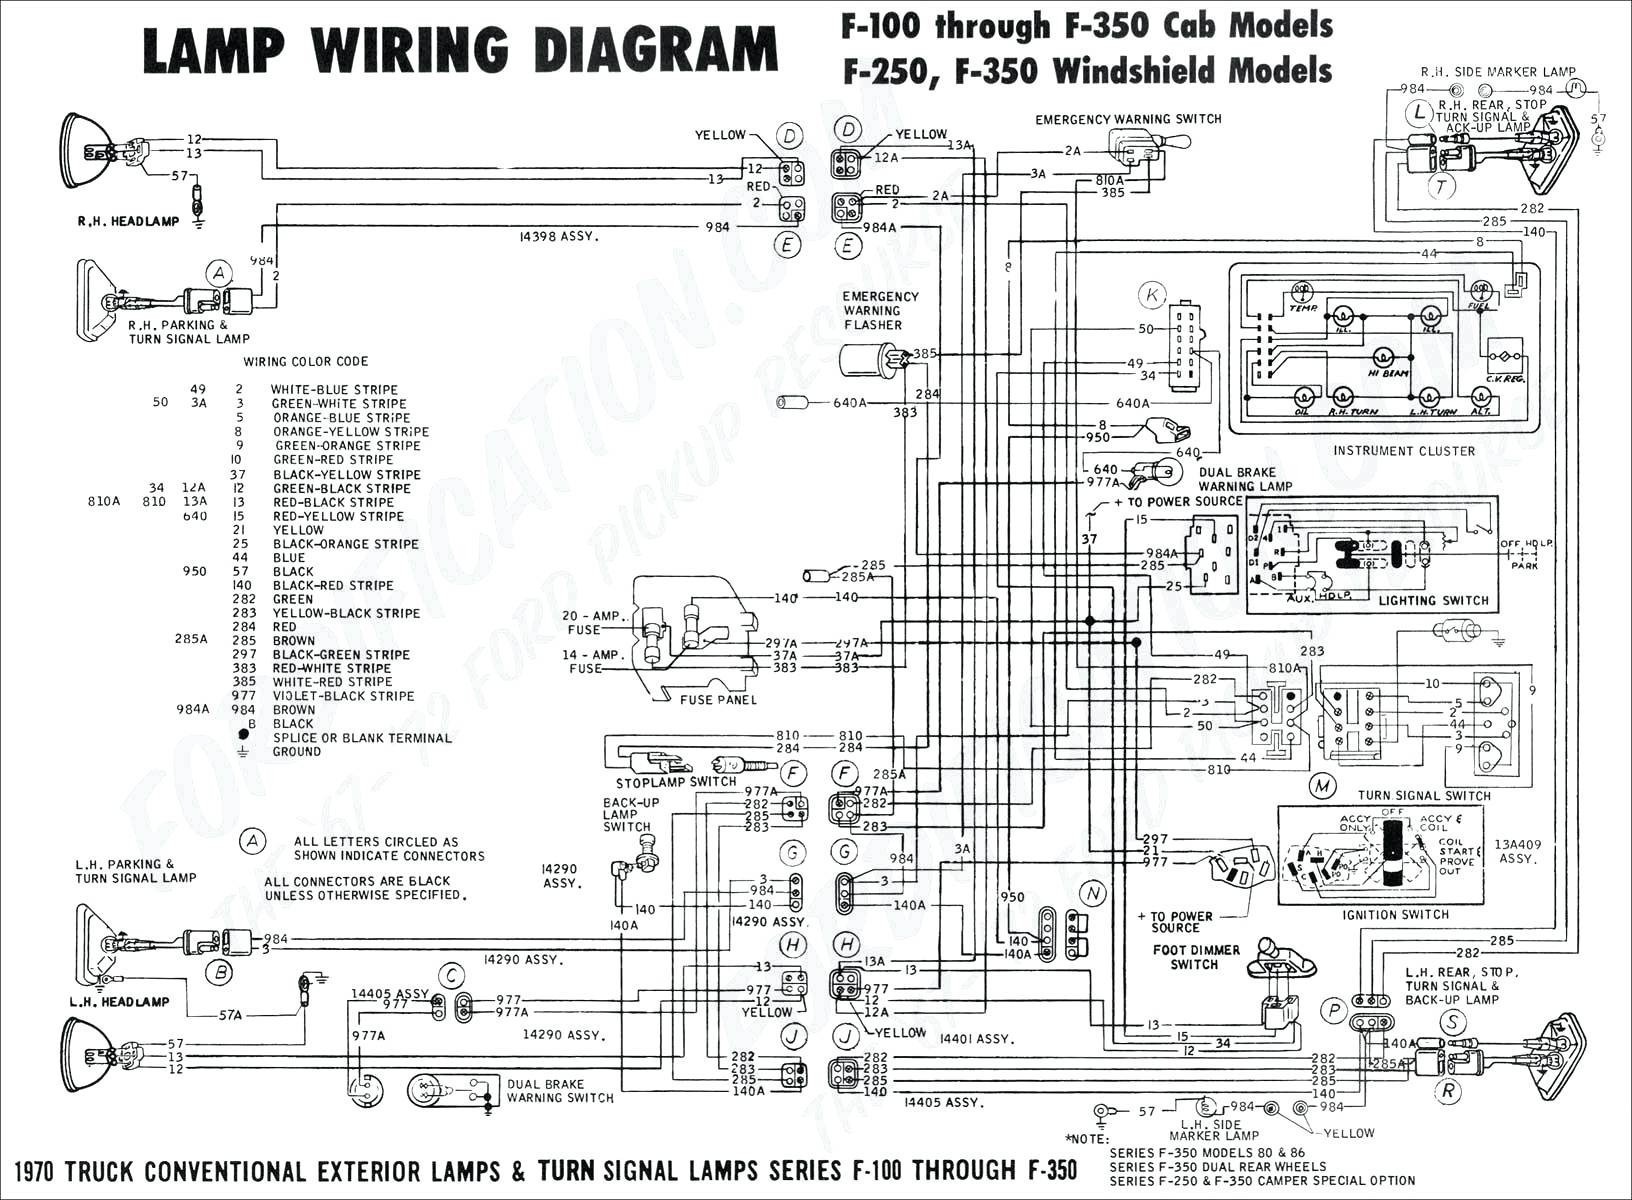 Saab 9 5 Engine Diagram 2003 Saab 9 5 Wiring Diagram Wiring Diagram toolbox Of Saab 9 5 Engine Diagram